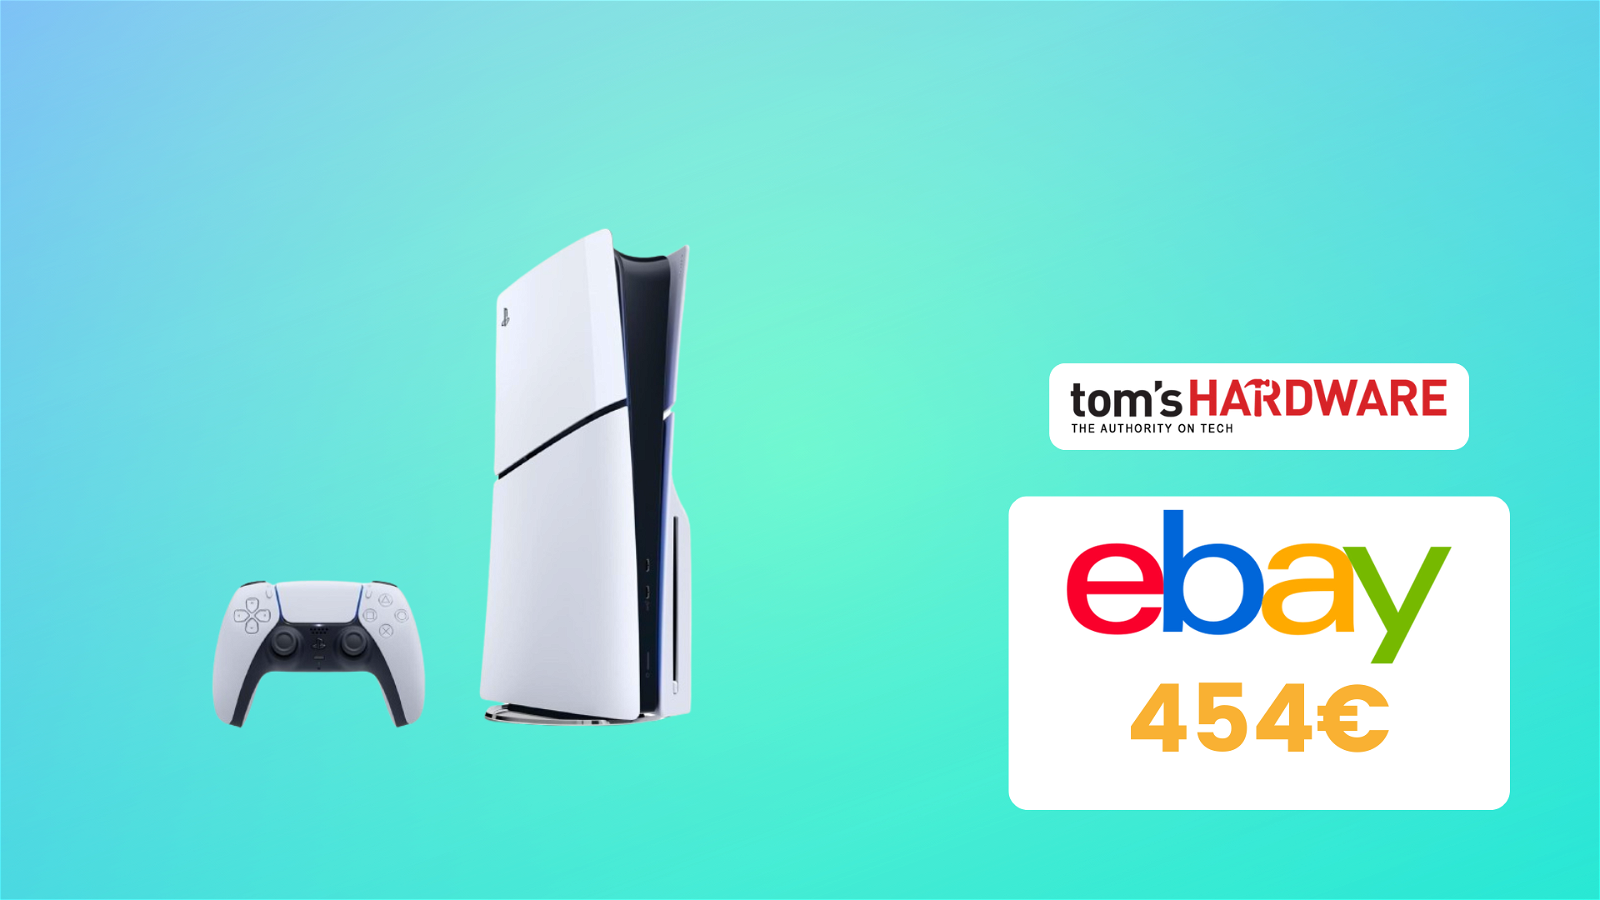 Immagine di PS5 Slim a un prezzo IMPERDIBILE su eBay grazie a questo COUPON! Solo 459€!